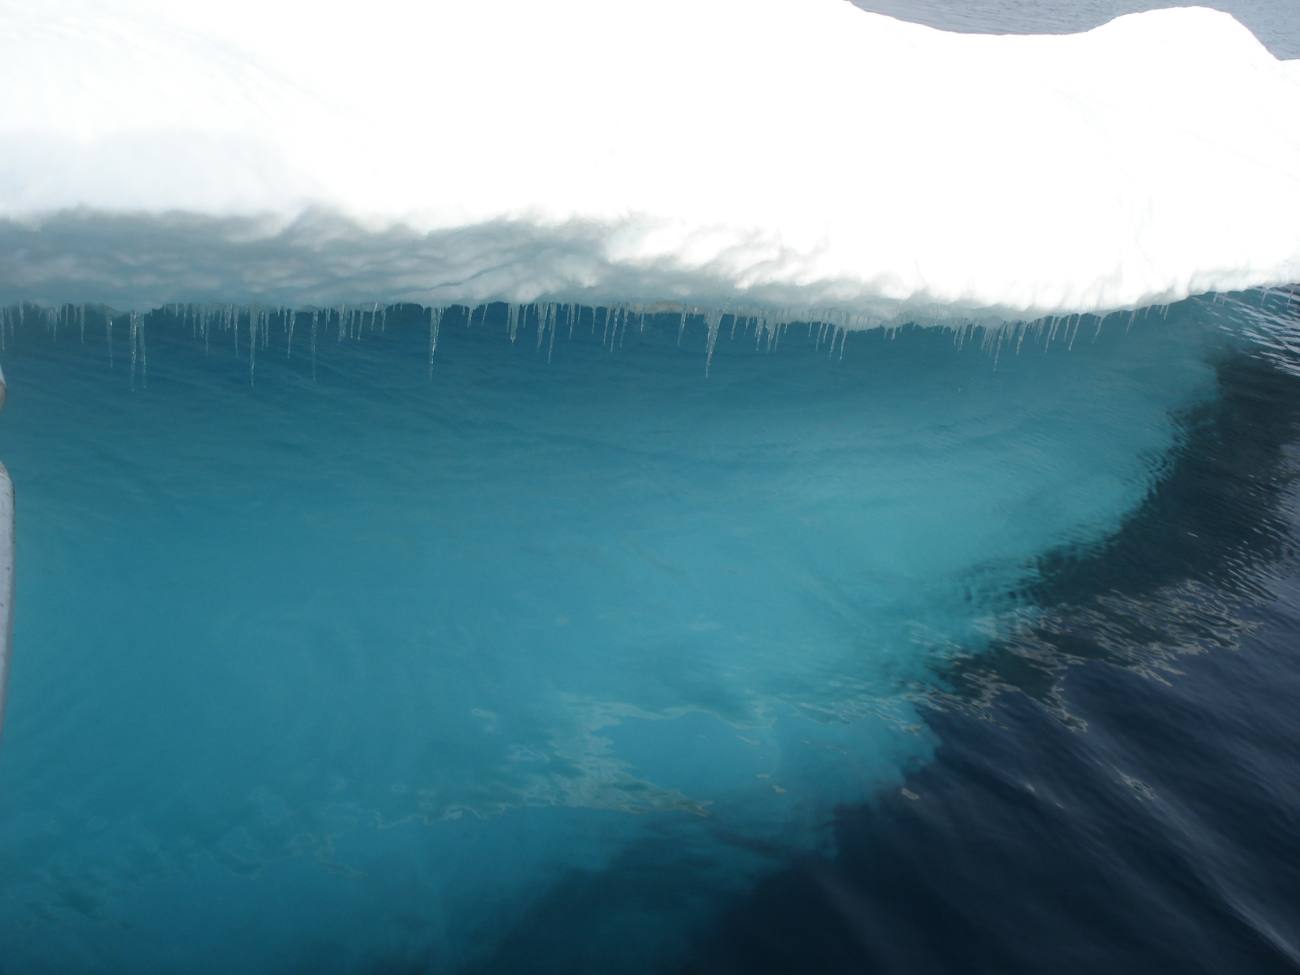 Subsurface of melting ice floe